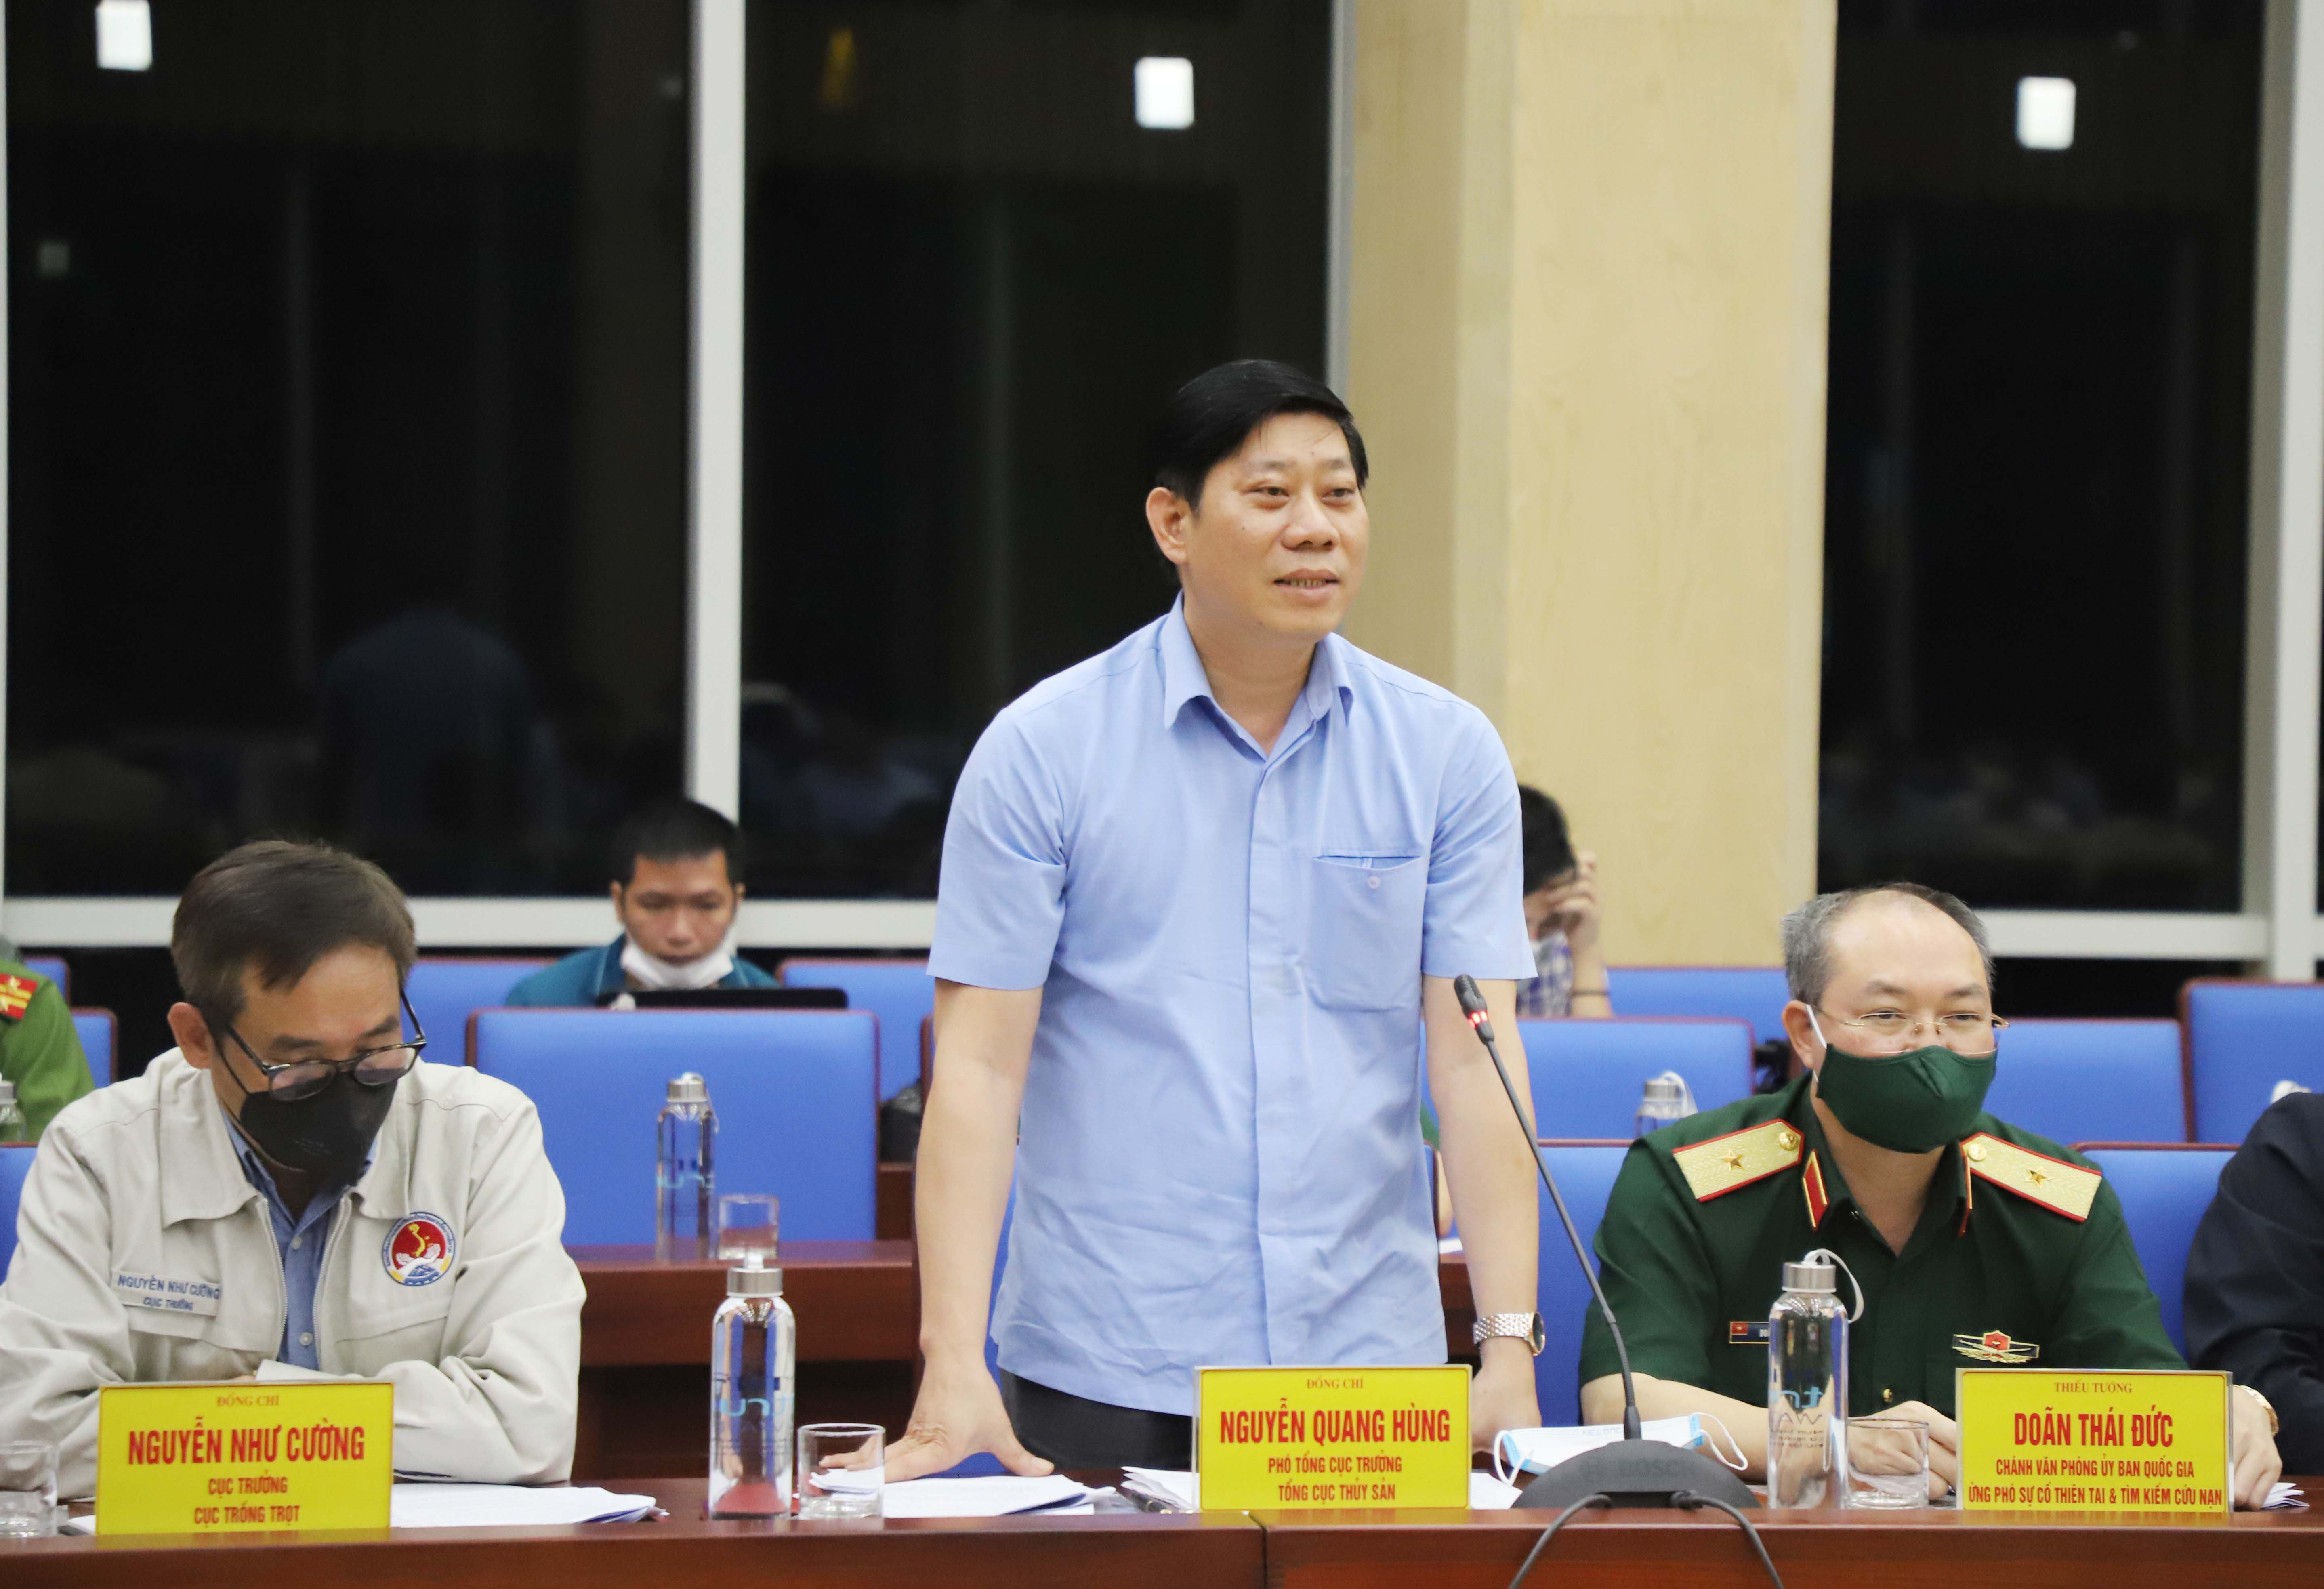 Đồng chí Nguyễn Quang Hùng - Phó Tổng cục trưởng Tổng cục Thủy Sản phát biểu tại buổi làm việc. Ảnh: Phạm Bằng